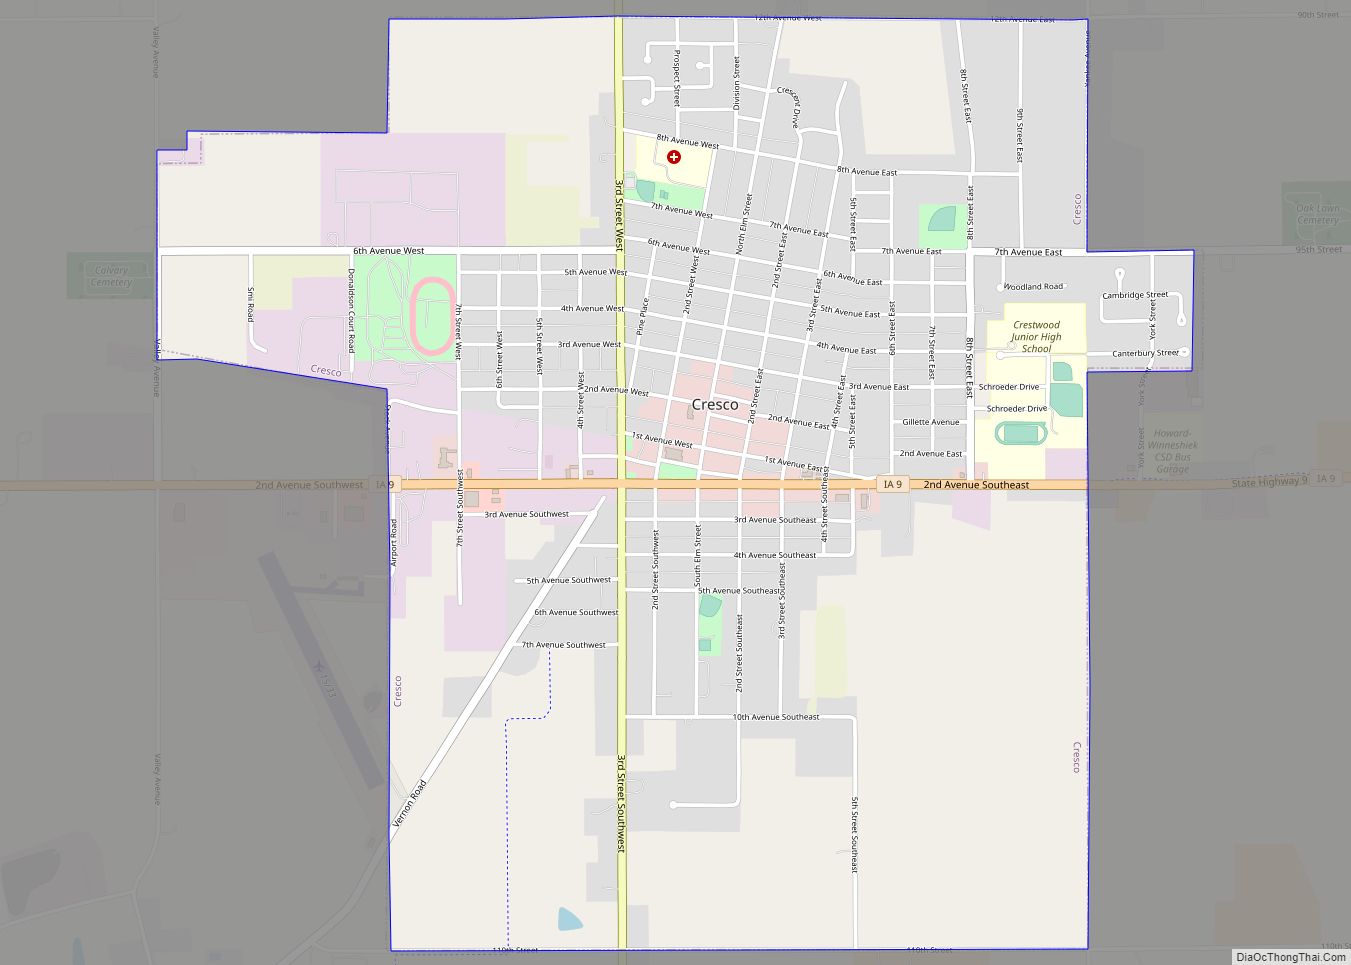 Map of Cresco city